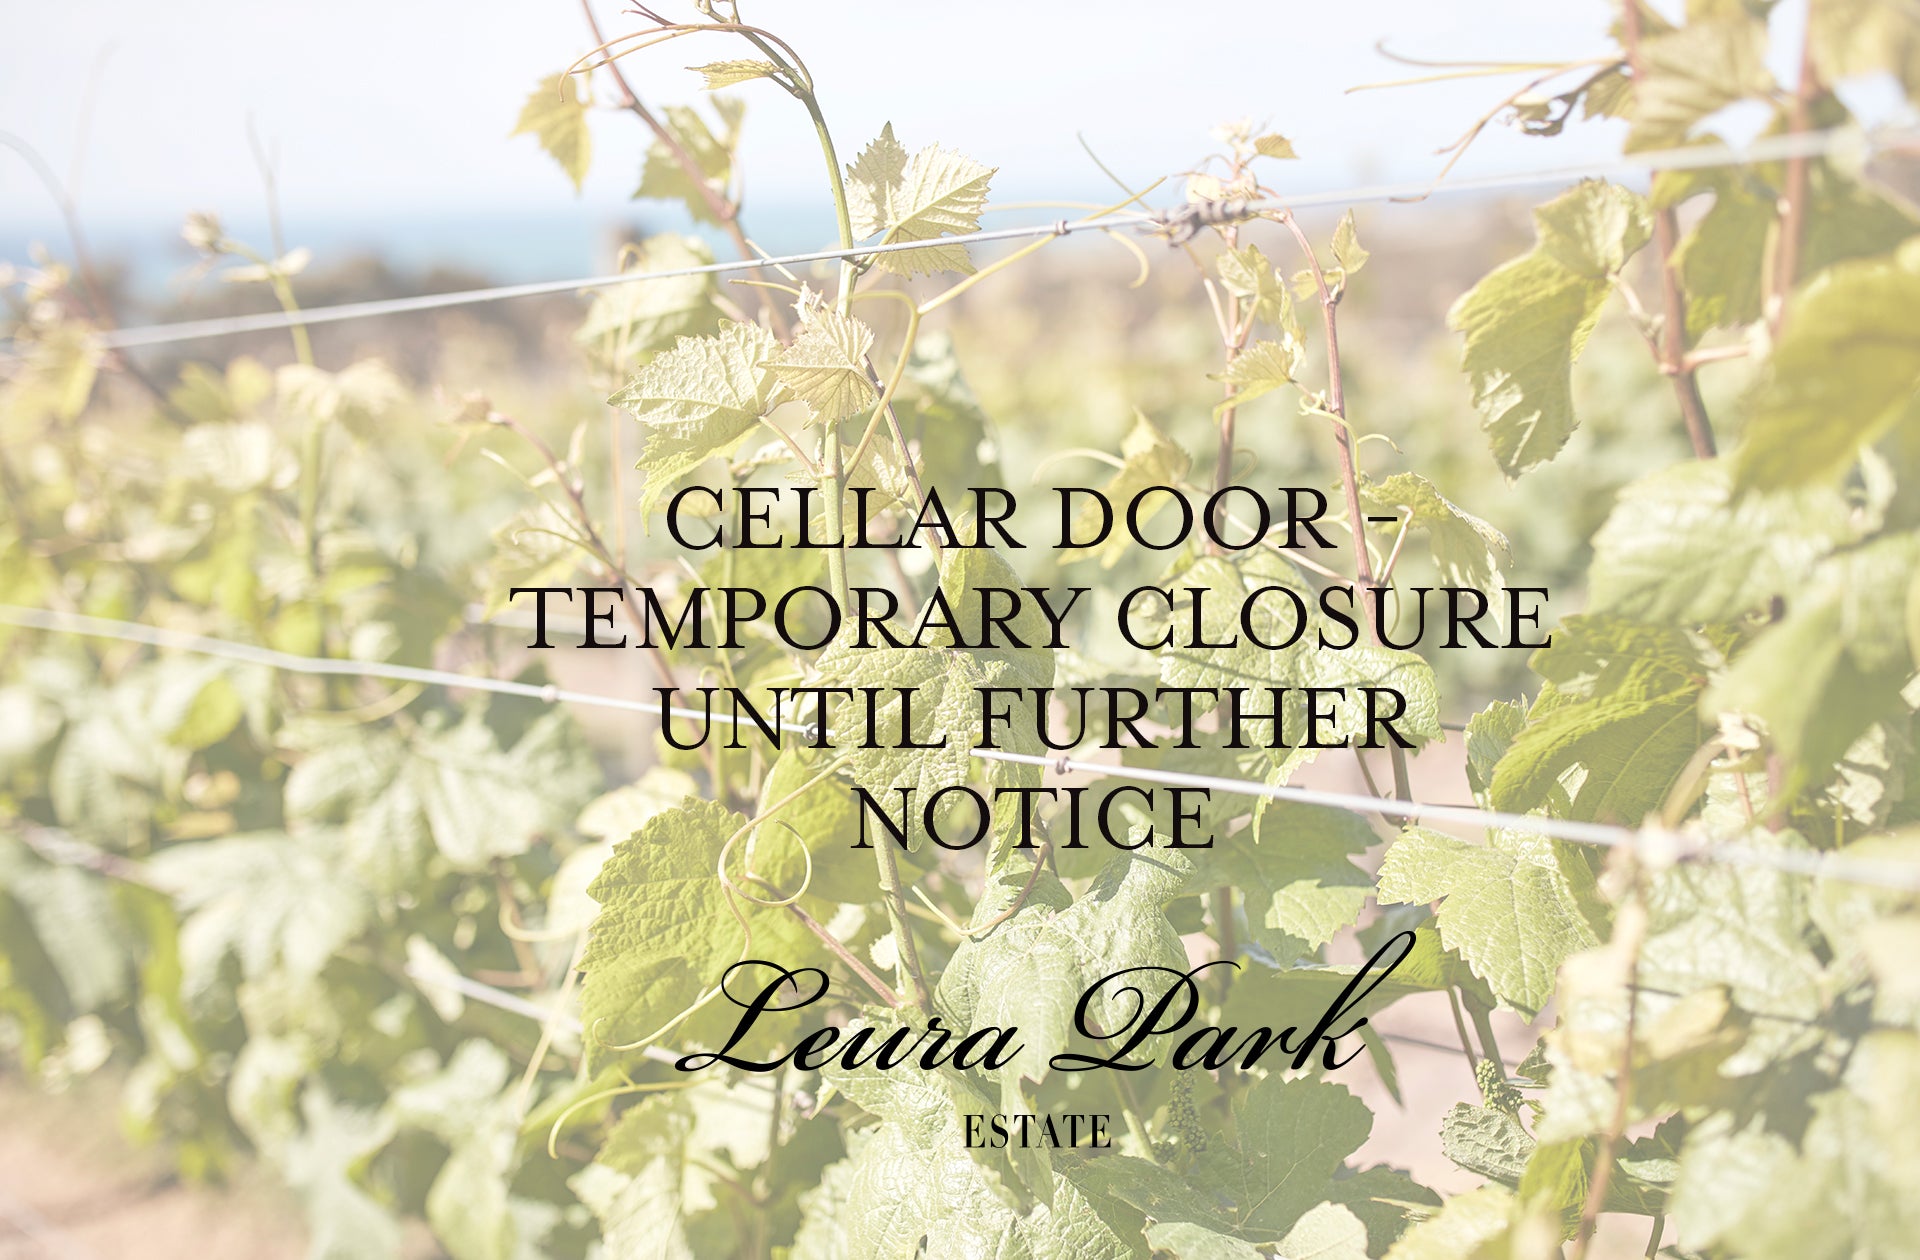 Cellar Door - Temporary Closure until further notice